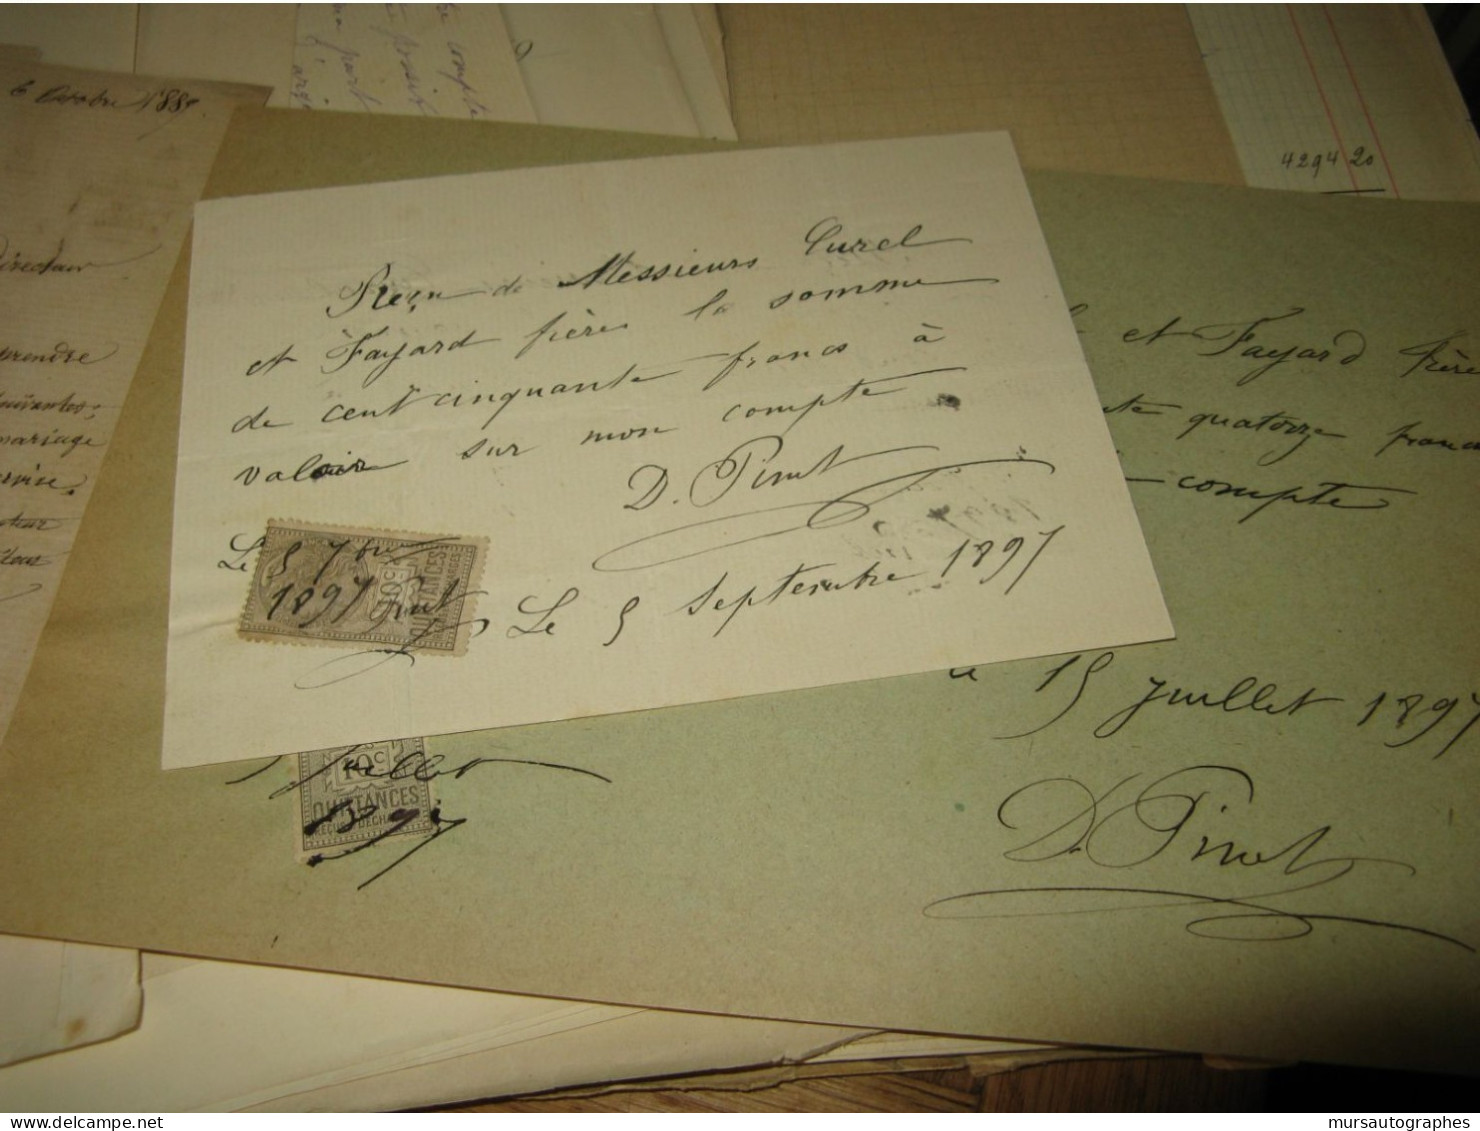 AUGUSTE DEBAY 2X Autographe Signé 1885 MEDECIN AUTEUR EROTISME + Dossier à DENTU - Inventeurs & Scientifiques